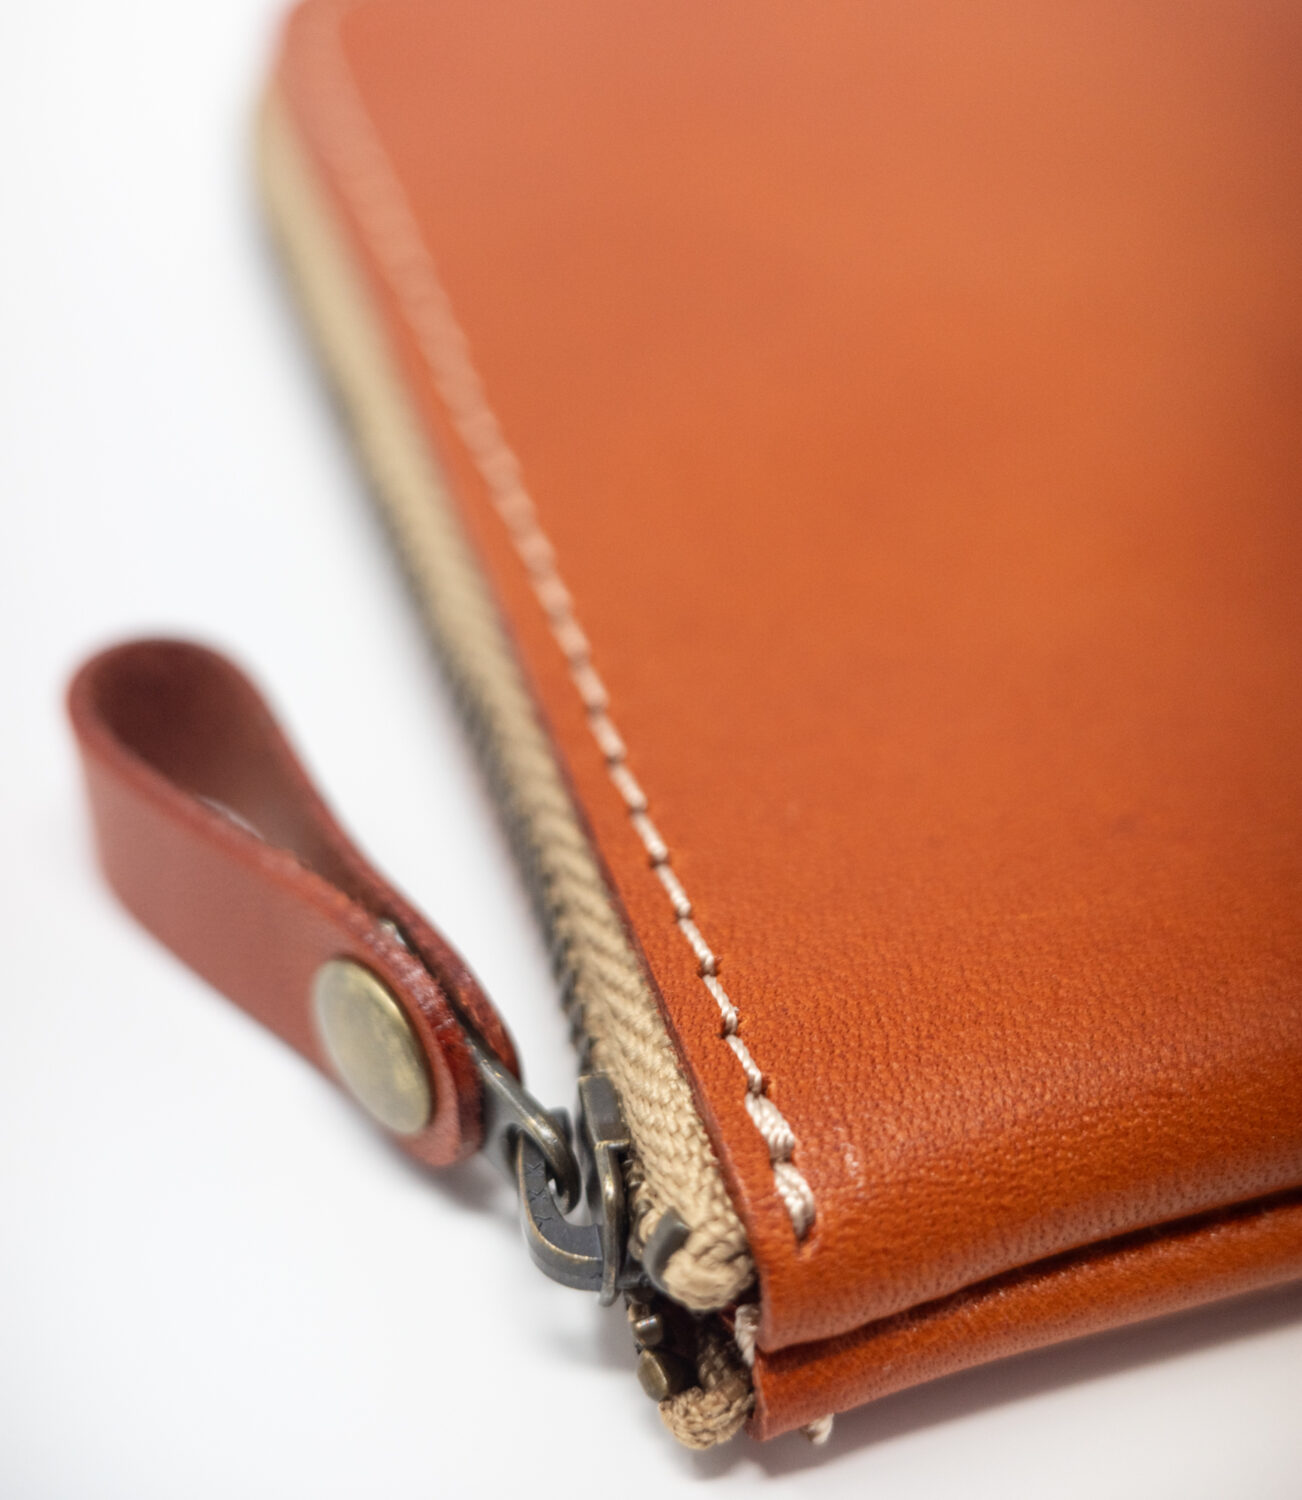 ネイティブ クリエイションのL字ファスナー薄型ミニ財布の縫製は丁寧